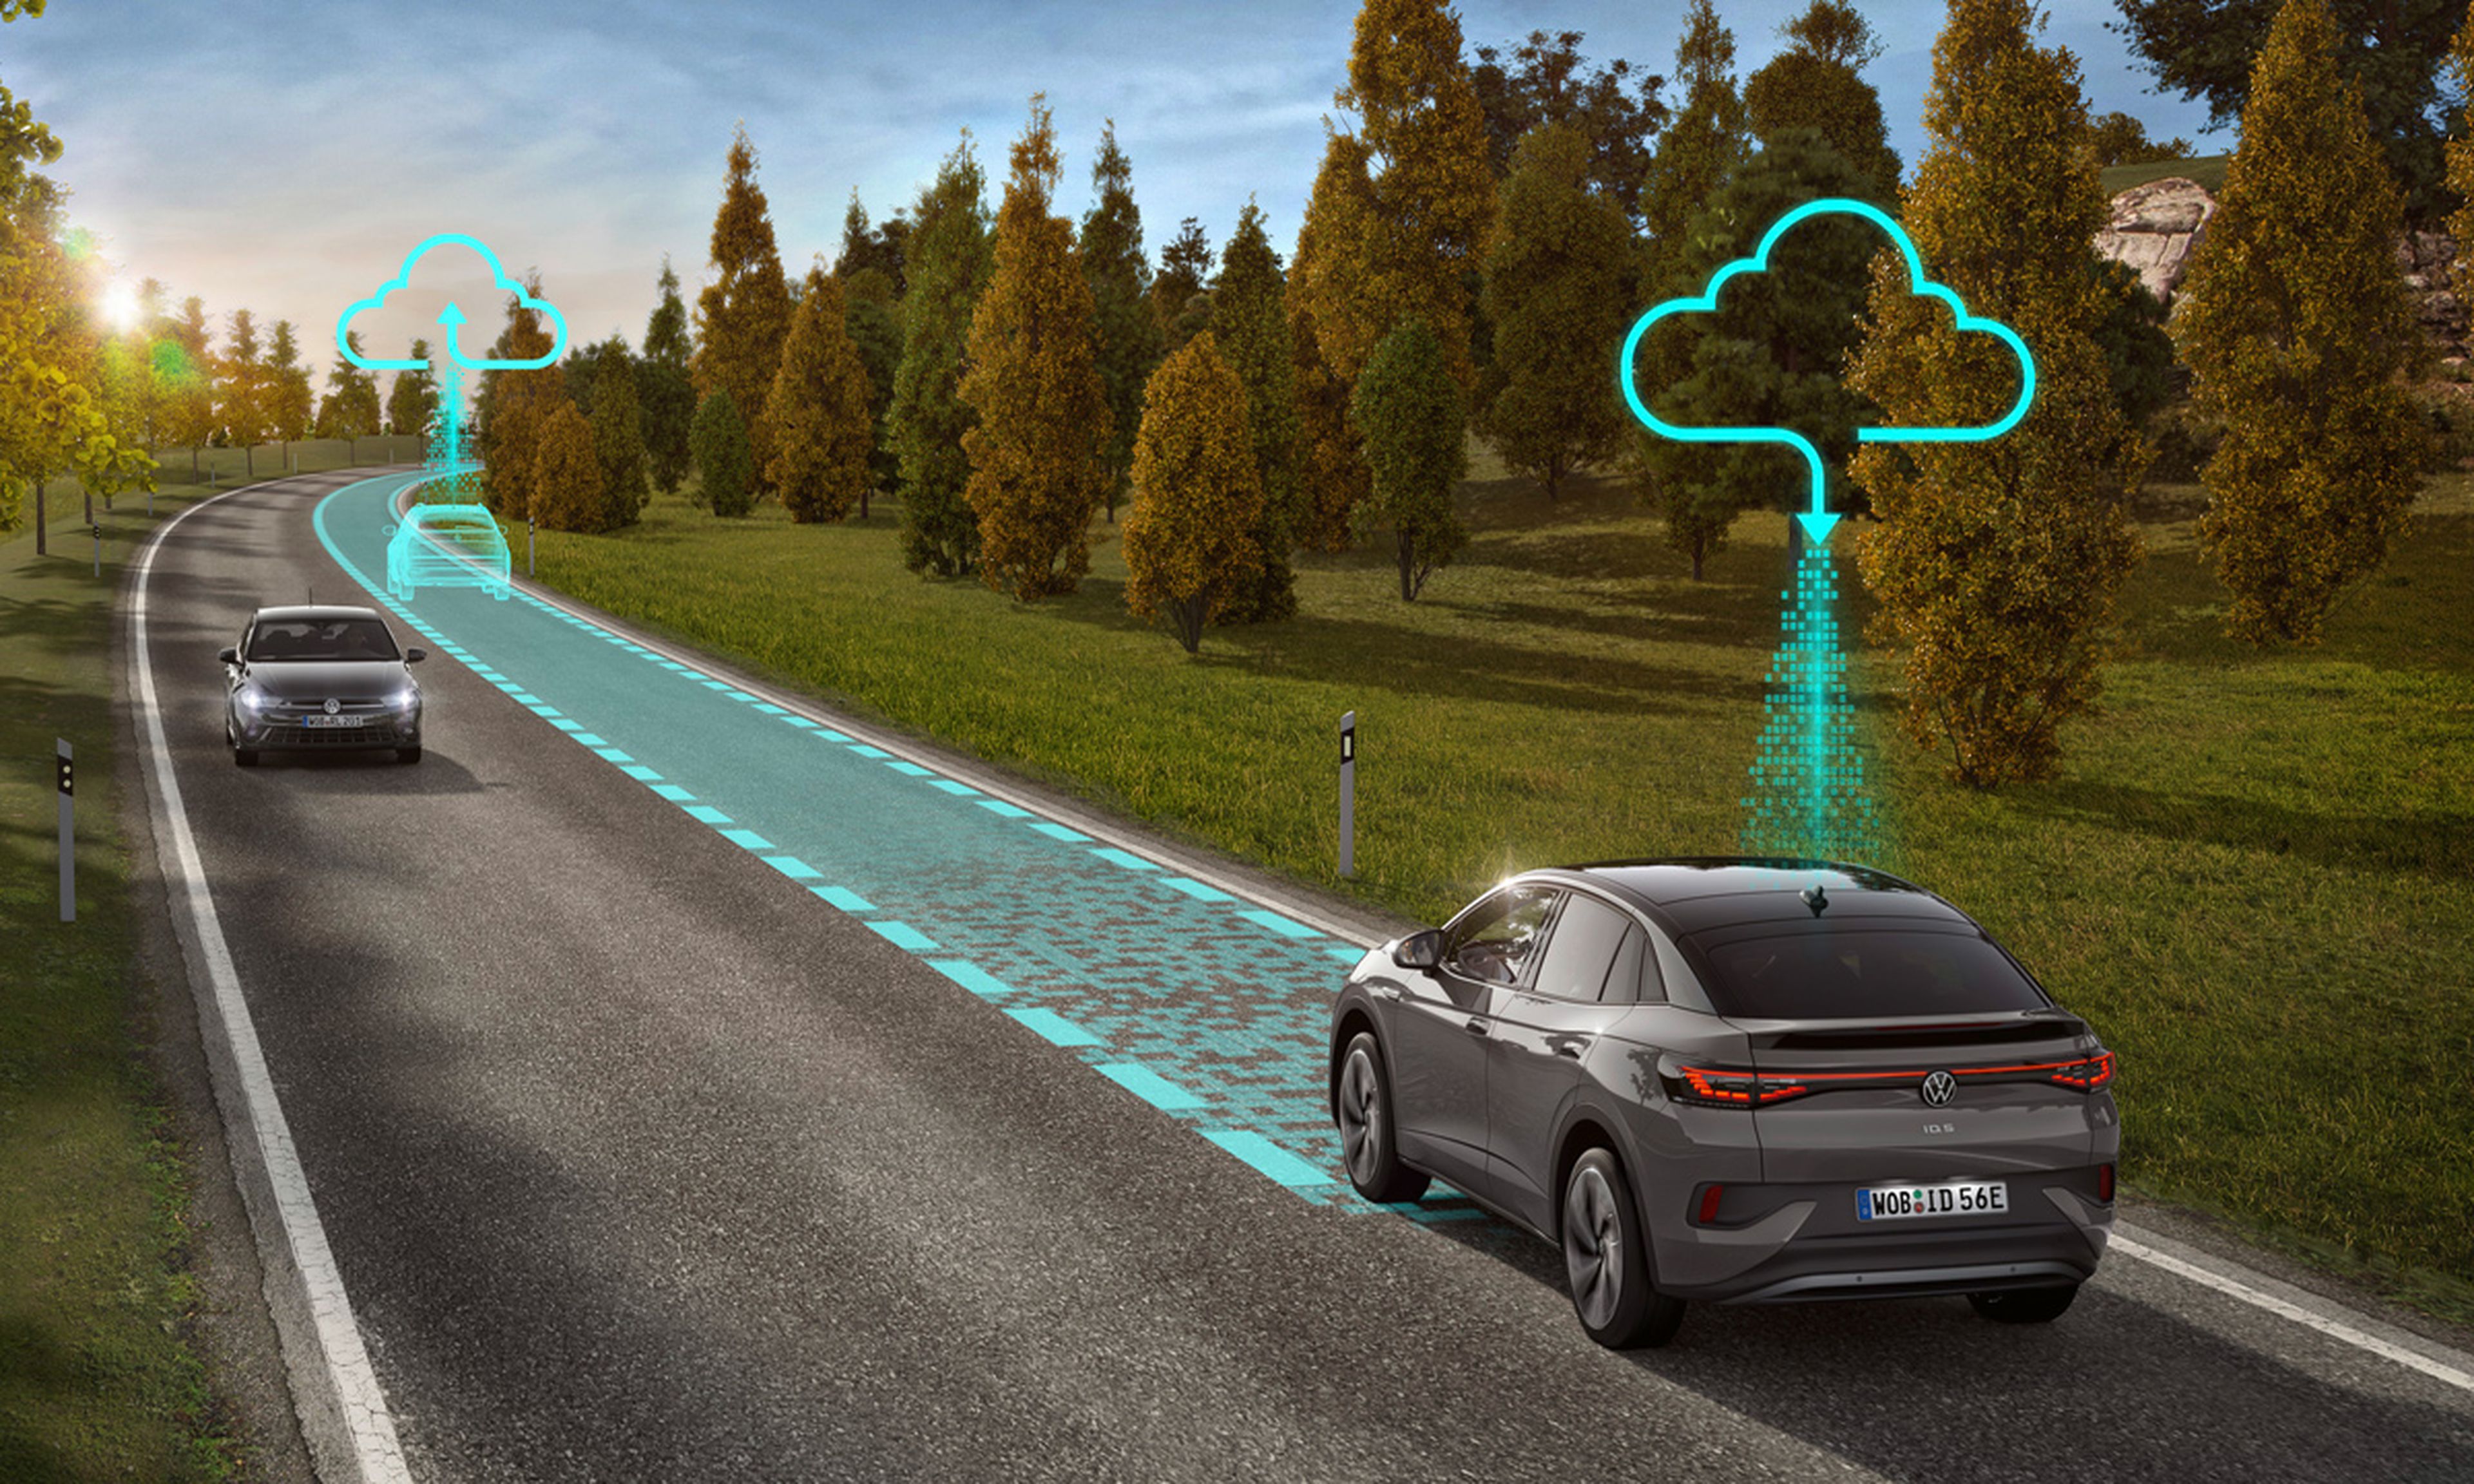 Gracias a la conexión con la nube, Volkswagen recopila datos de los conductores que acceden a compartirlos.